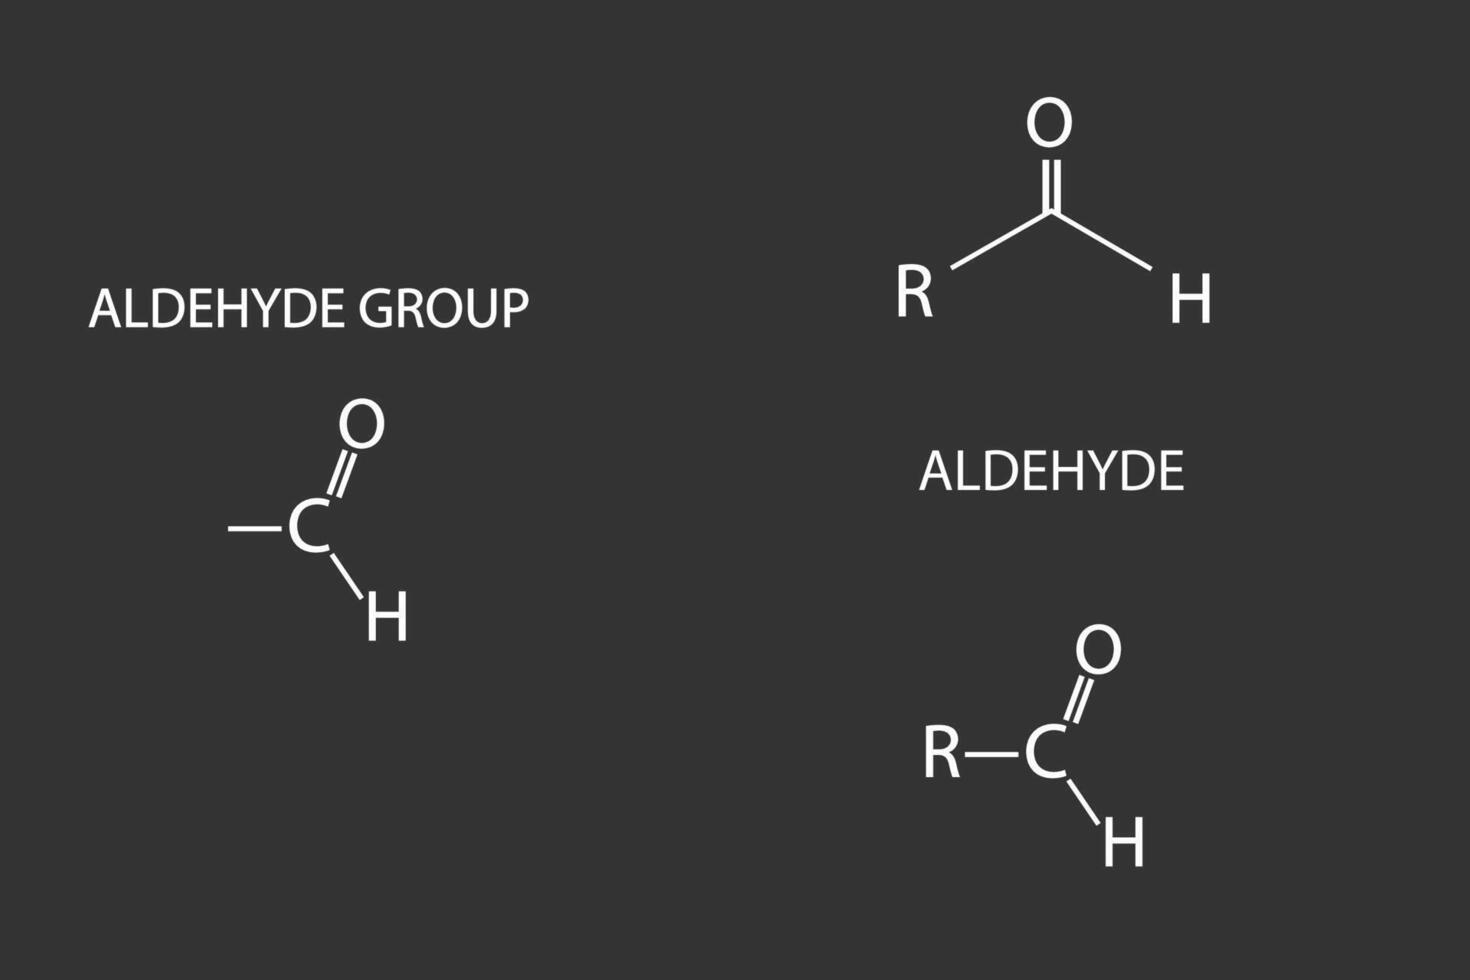 Aldehyd Acid molekular Skelett- chemisch Formel vektor